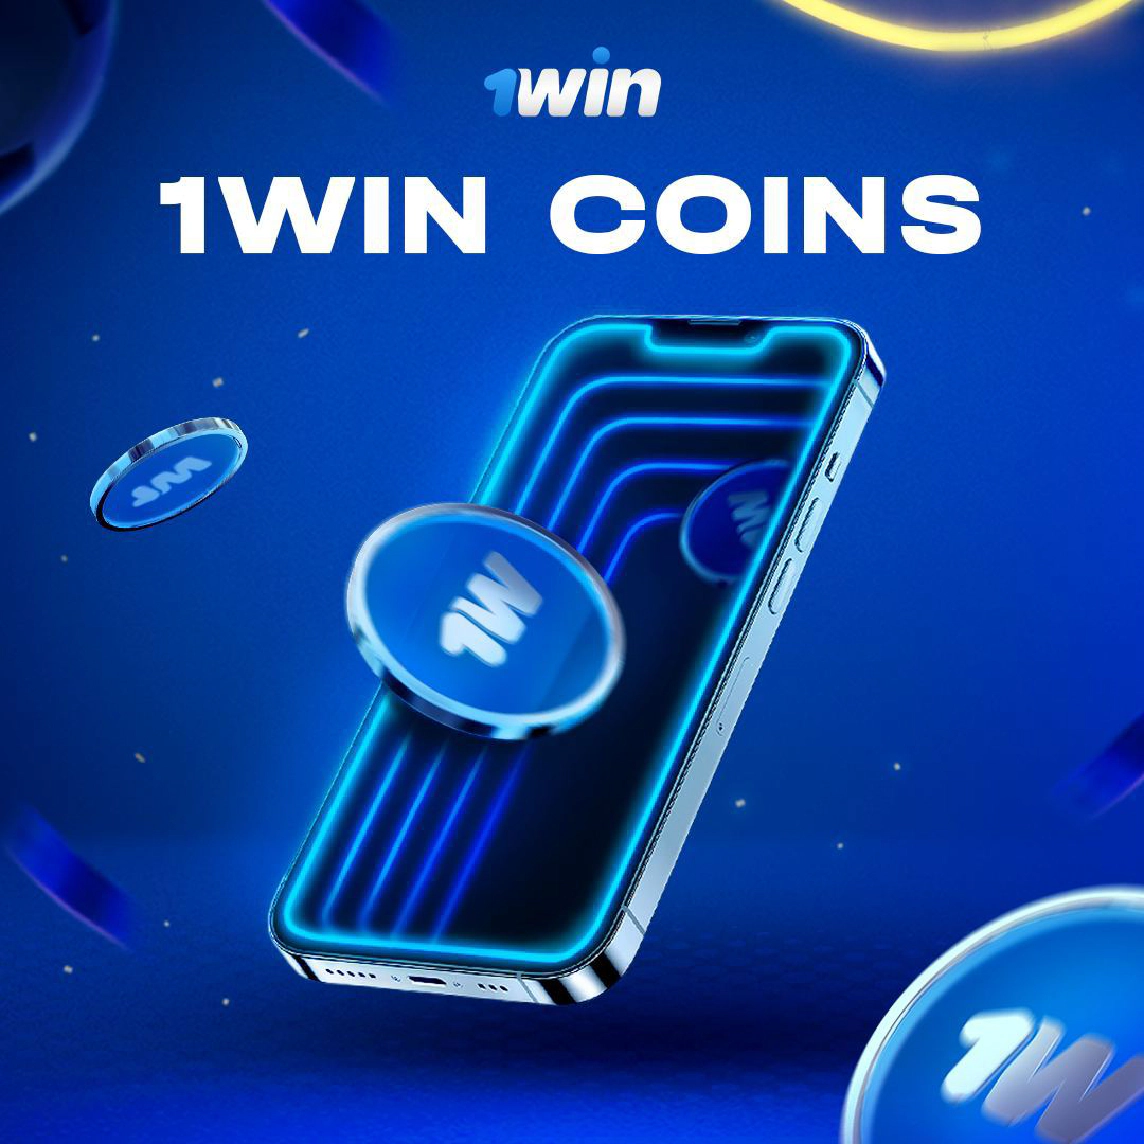 1win coins рдХреИрд╕реЗ рдкреНрд░рд╛рдкреНрдд рдХрд░реЗрдВ